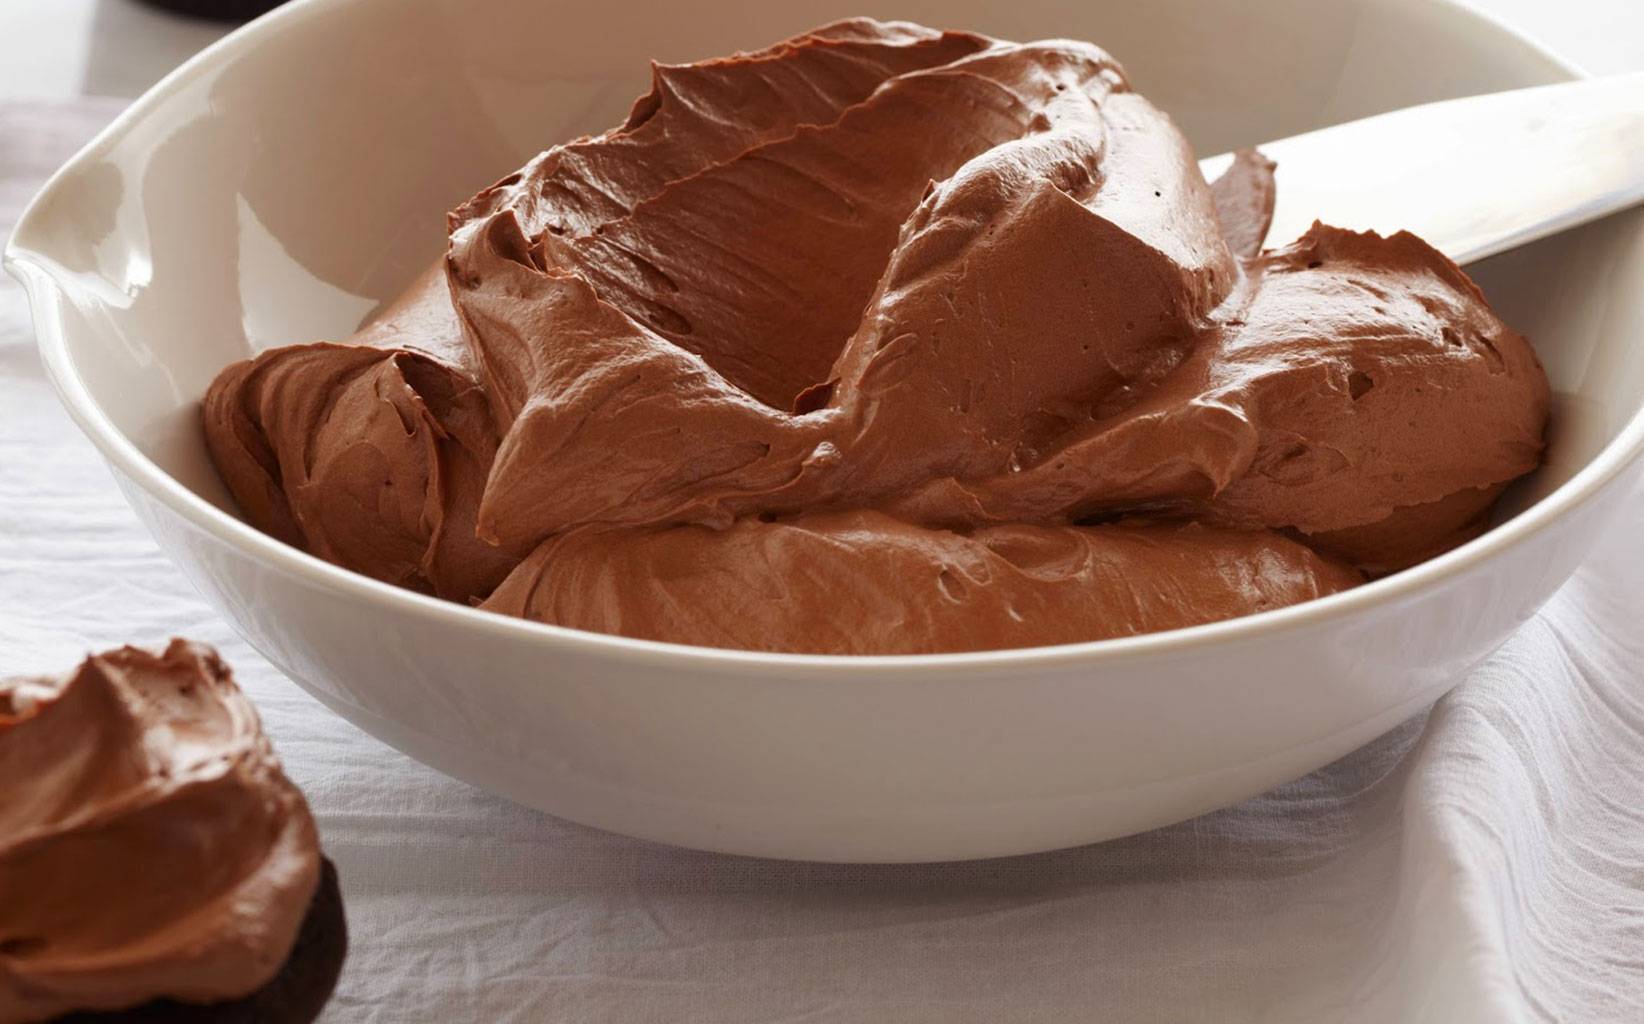 Горячий шоколад: калорийность, отличия от какао, польза и вред для здоровья, состав